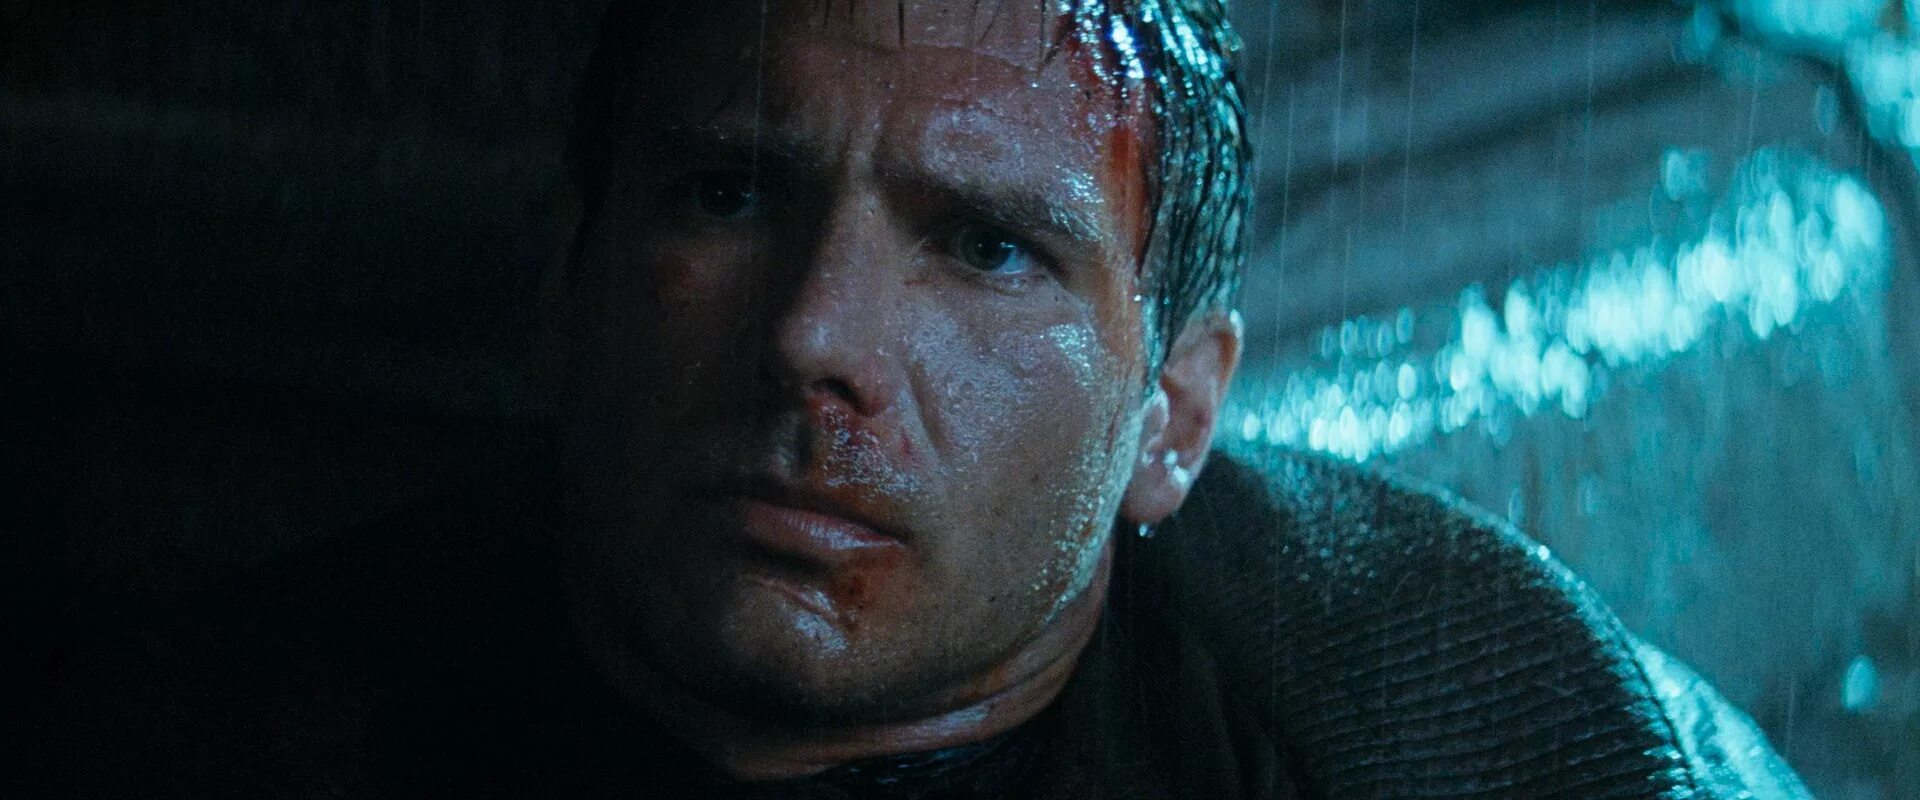 Бегущий по лезвию 1982. Харрисон Форд Бегущий по лезвию 1982. Харрисон Форд Бегущий по лезвию 2049. Blade Runner 1982 Рутгер Хауэр. Tears in the rain